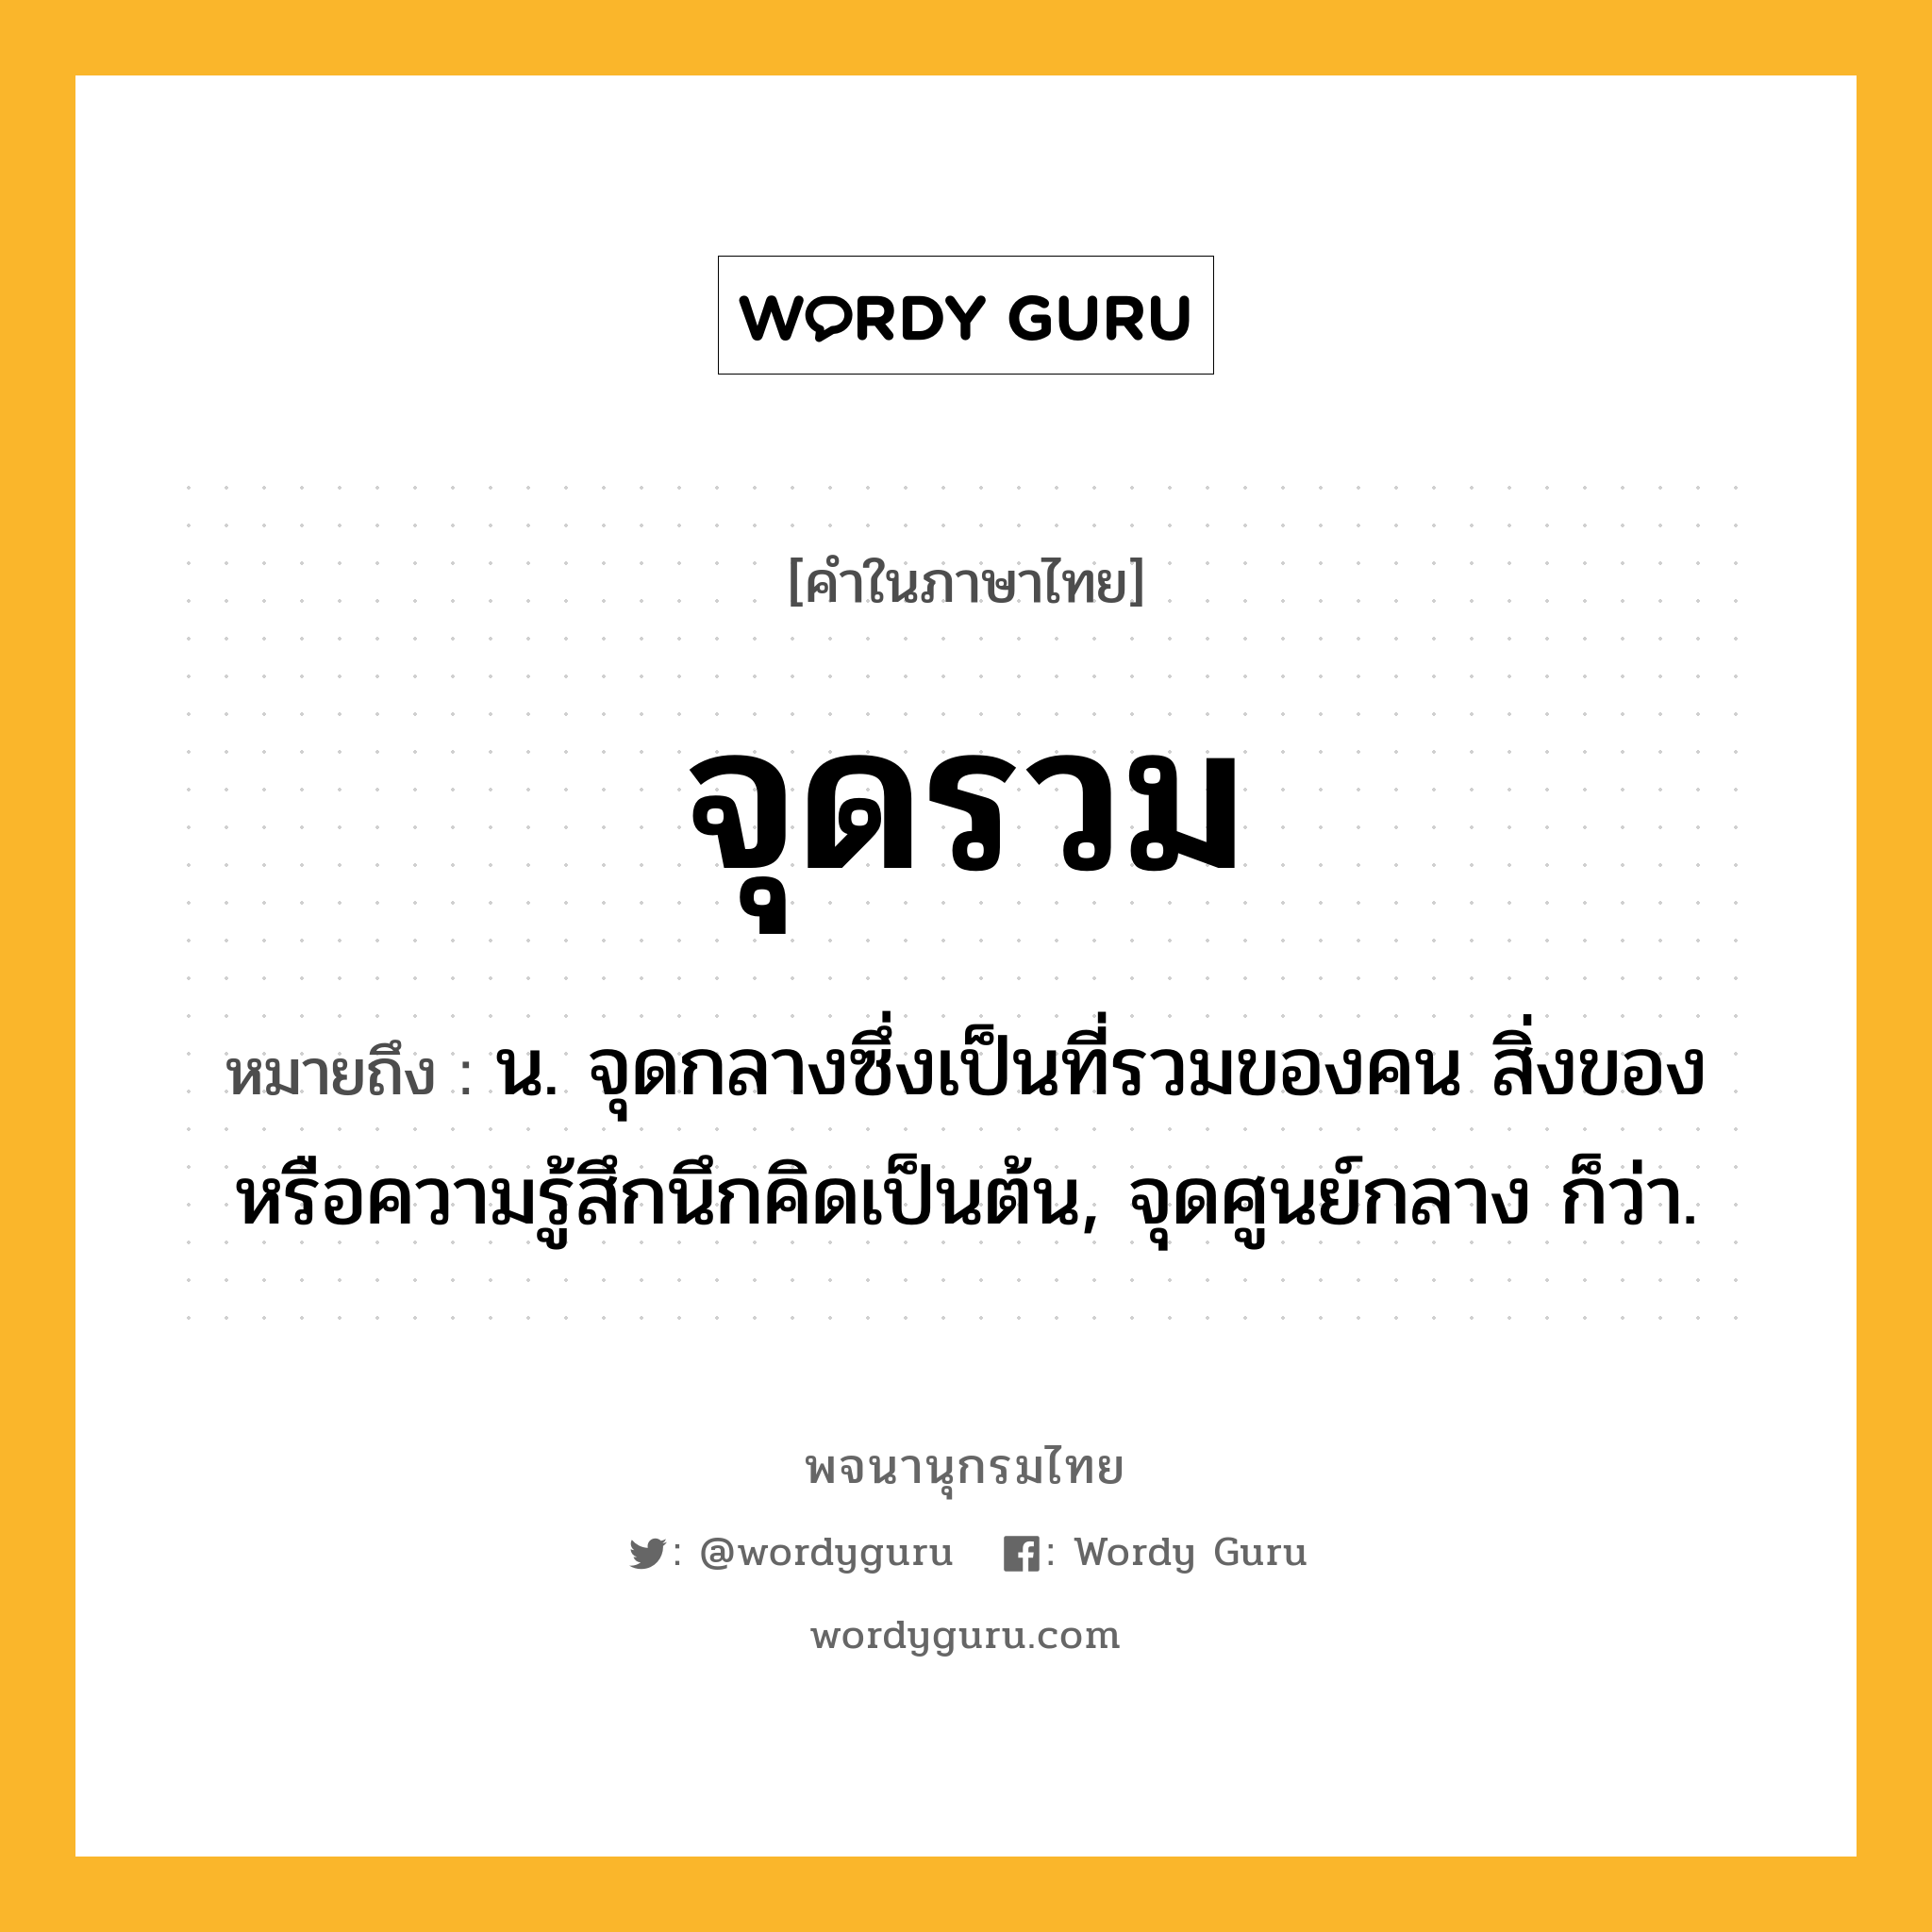 จุดรวม ความหมาย หมายถึงอะไร?, คำในภาษาไทย จุดรวม หมายถึง น. จุดกลางซึ่งเป็นที่รวมของคน สิ่งของ หรือความรู้สึกนึกคิดเป็นต้น, จุดศูนย์กลาง ก็ว่า.